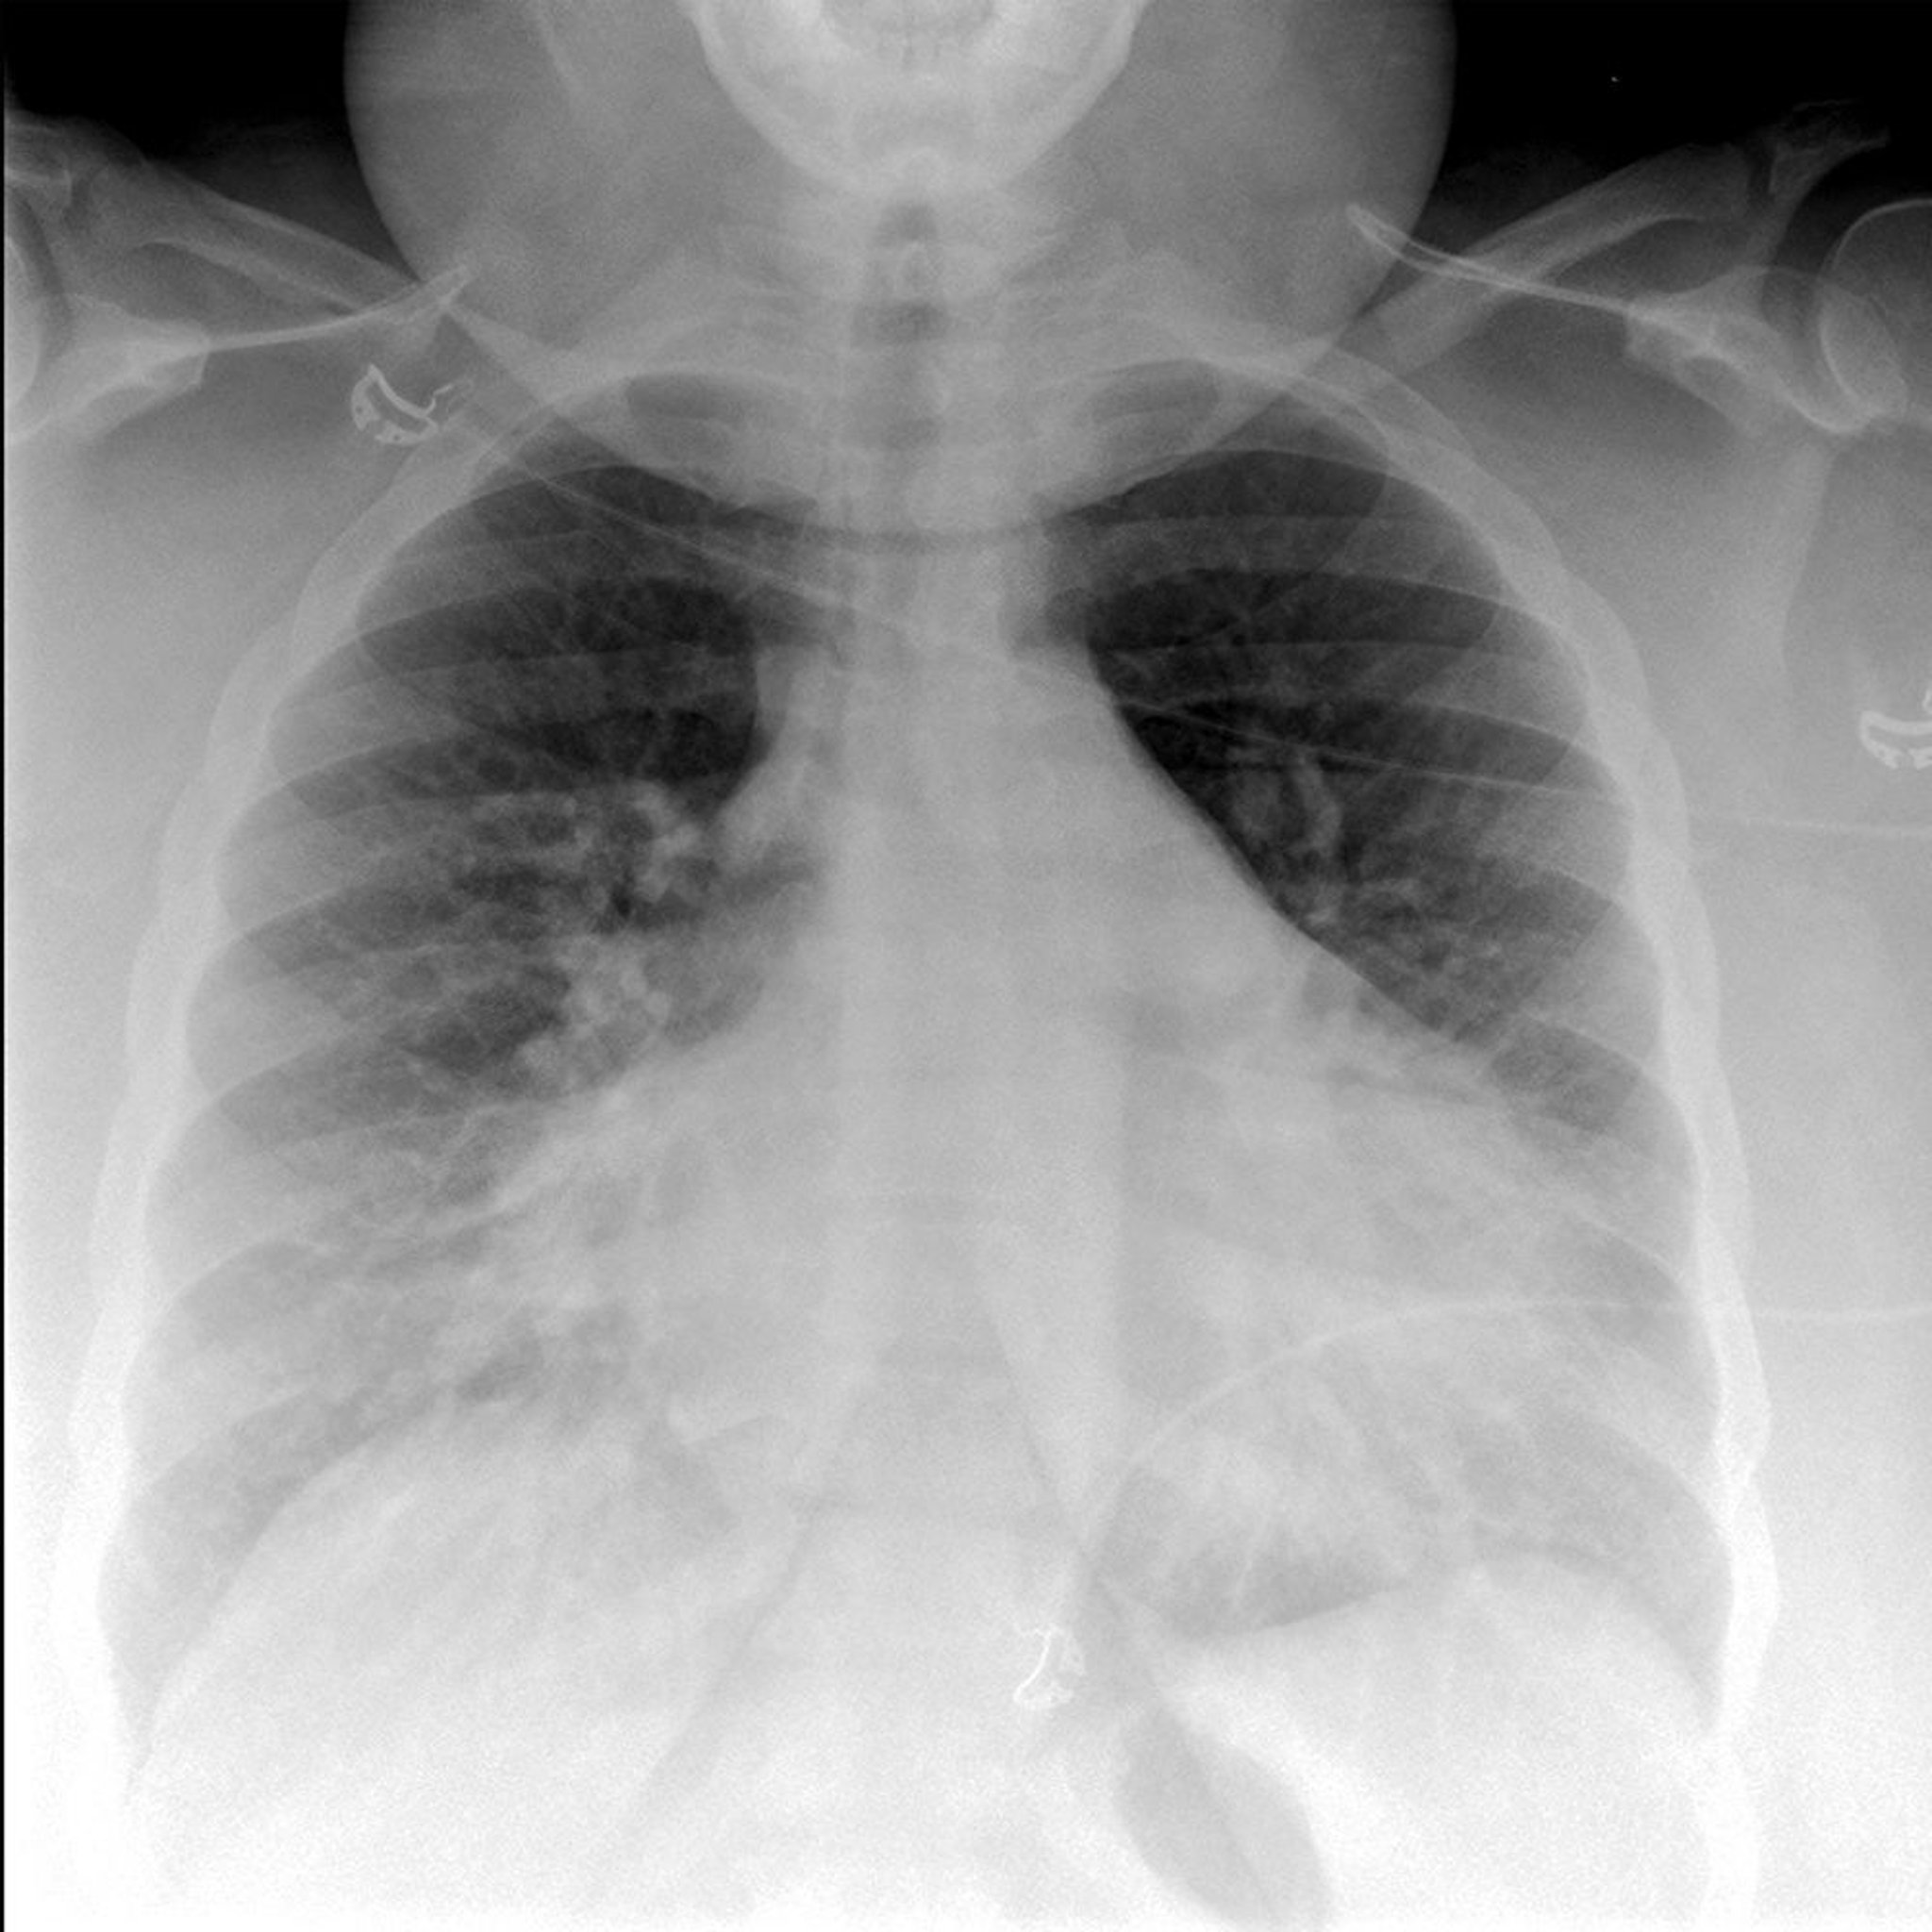 Rx thorax d'un patient qui a un œdème pulmonaire